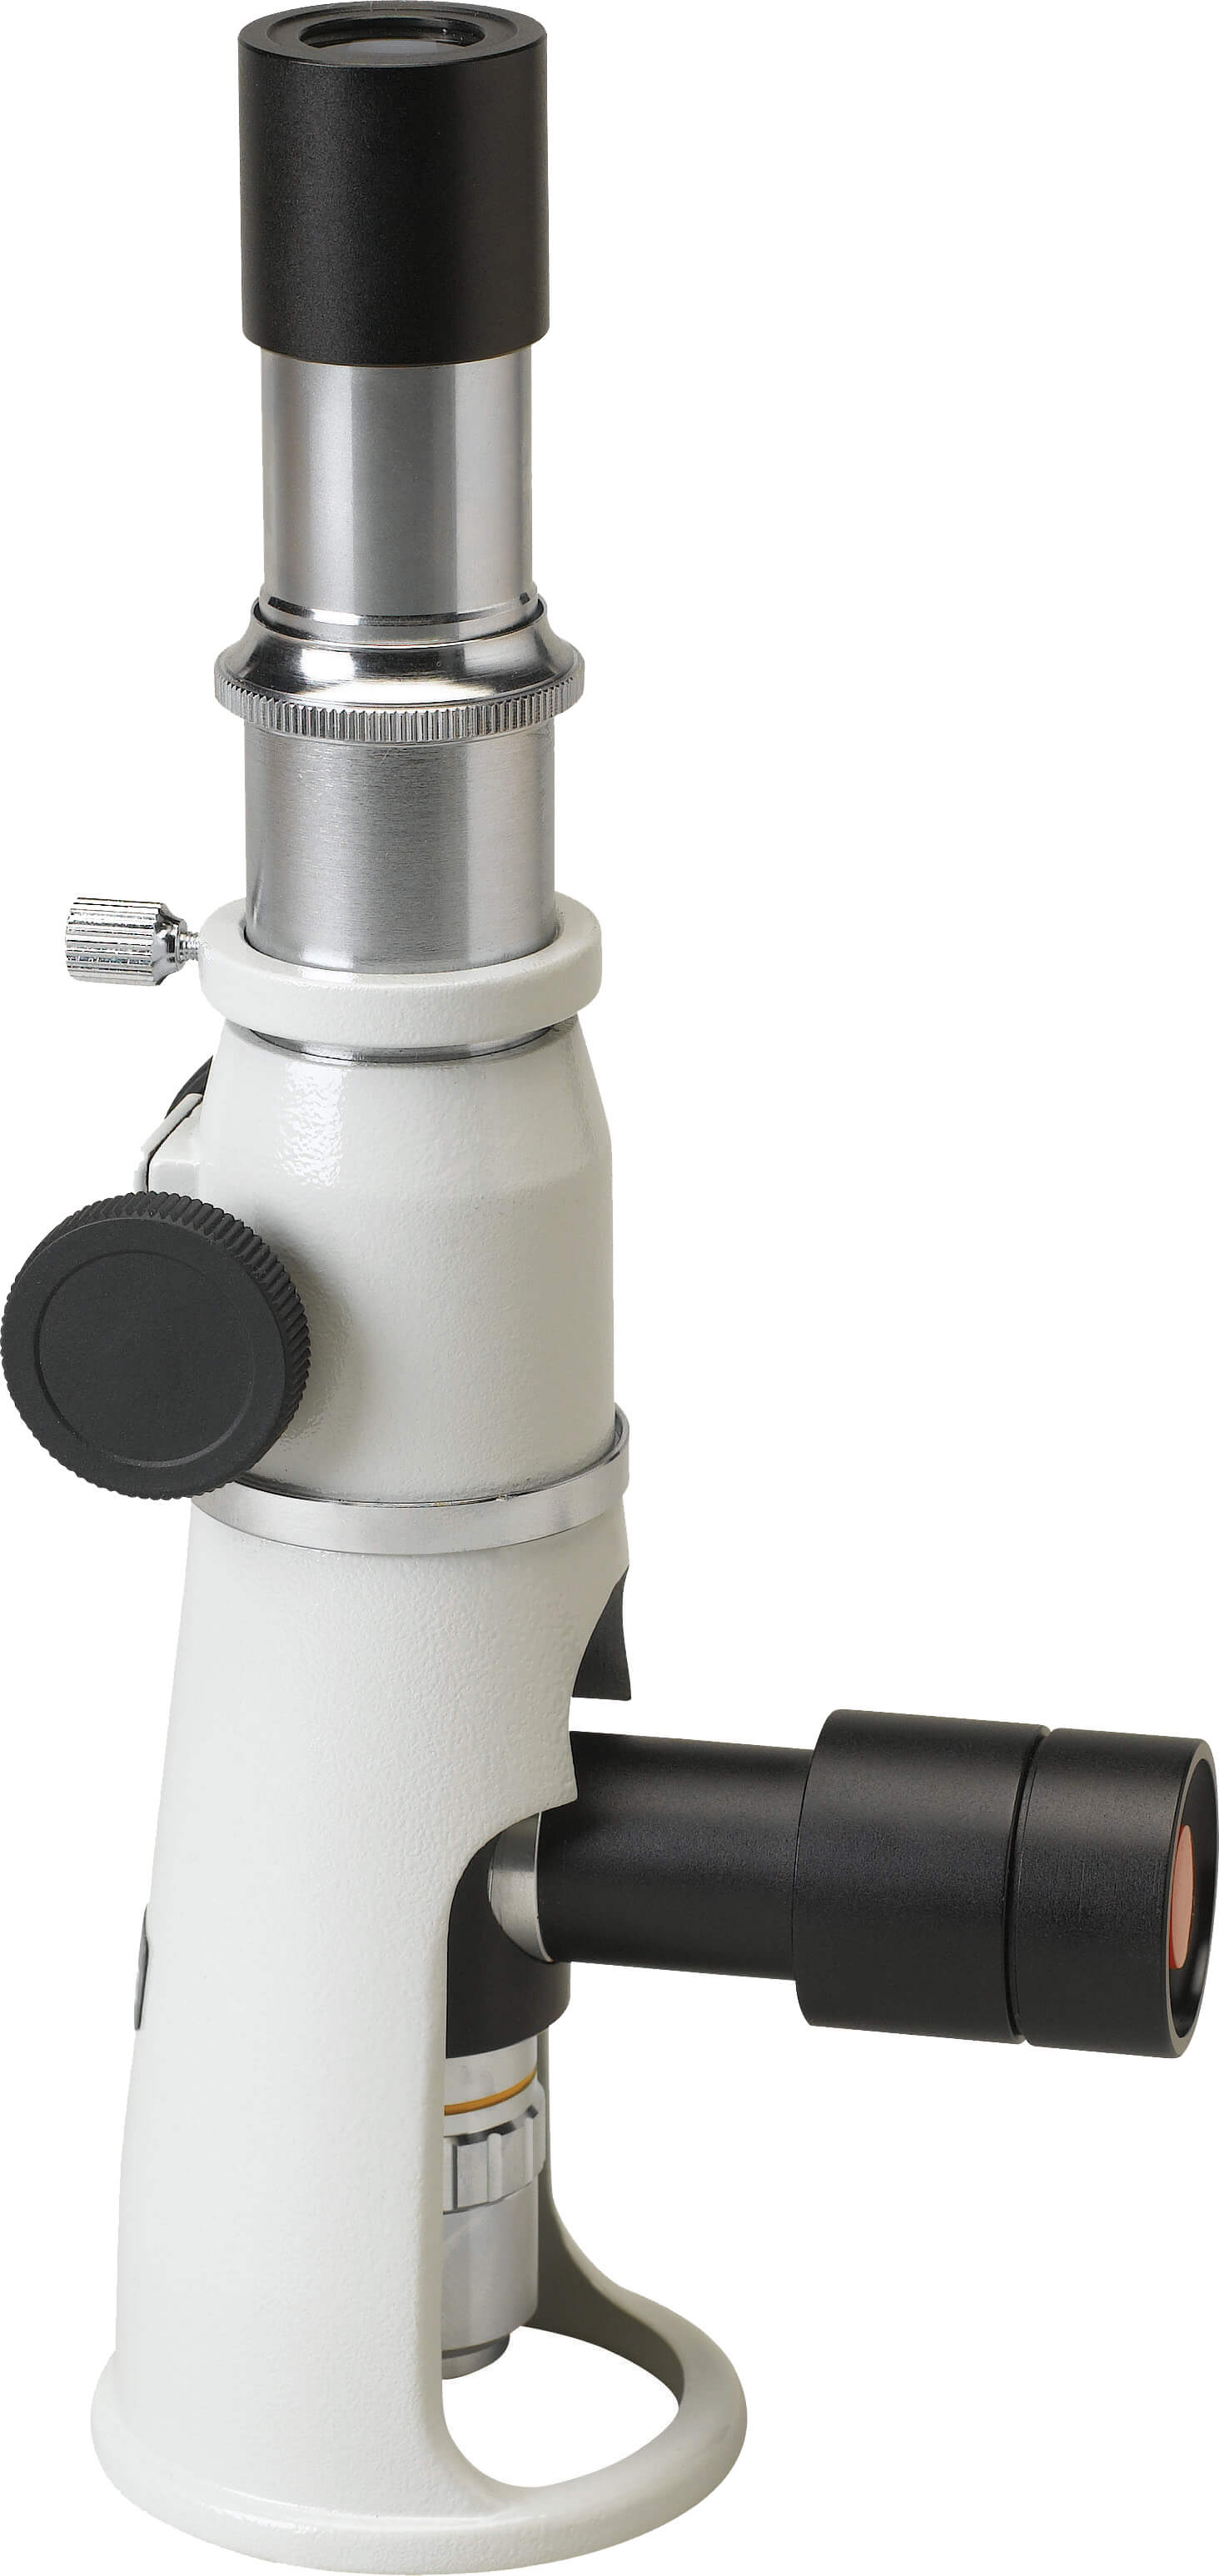 Портативный микроскоп – PSM-5 – купить, цены на портативные микроскопы